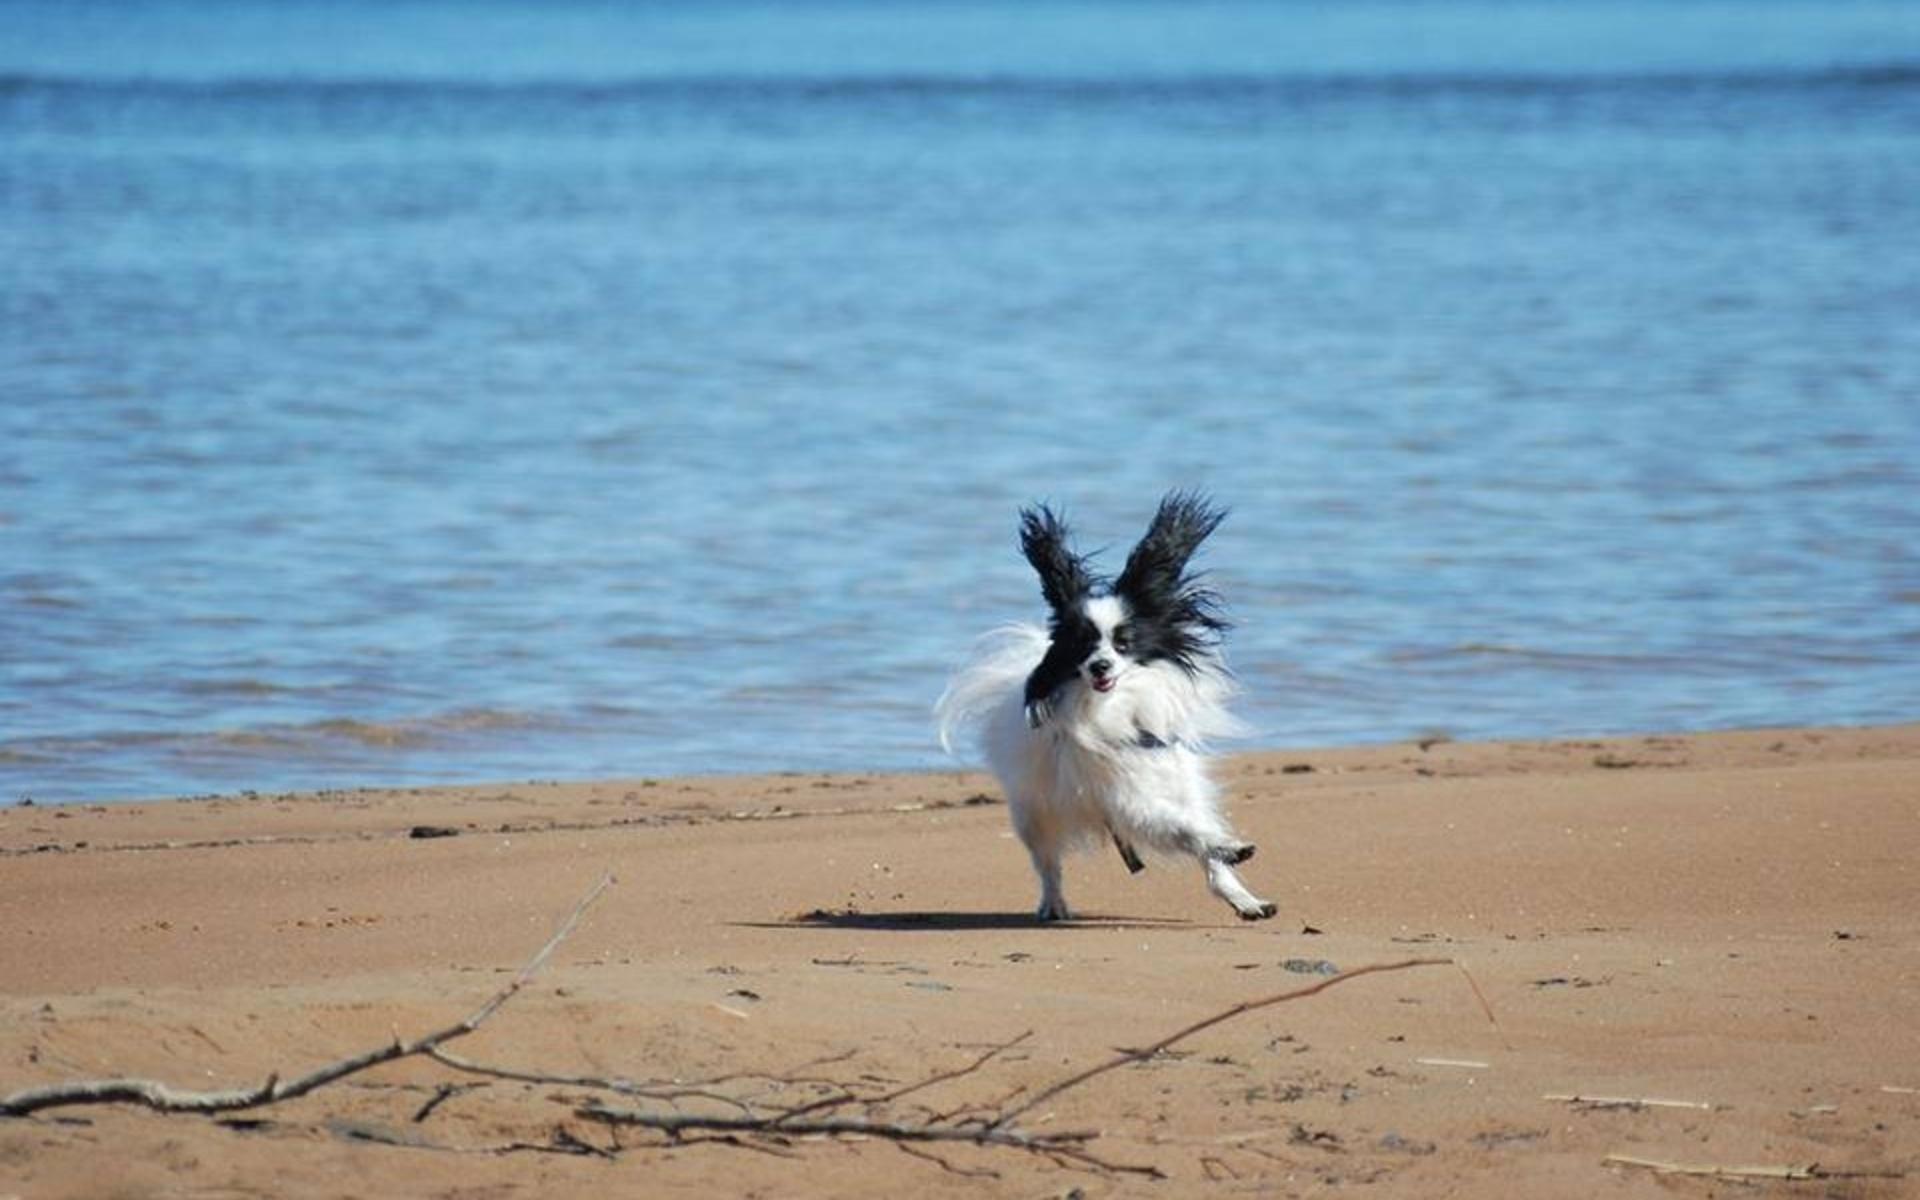 ”Detta är Tom-tom, som lyckligt springer på stranden på Gardesanna. Han kan även uppskatta att sitta i skuggan och spana på folk och hundar, gärna med en glass i tassen!”, skriver Anette Öberg.